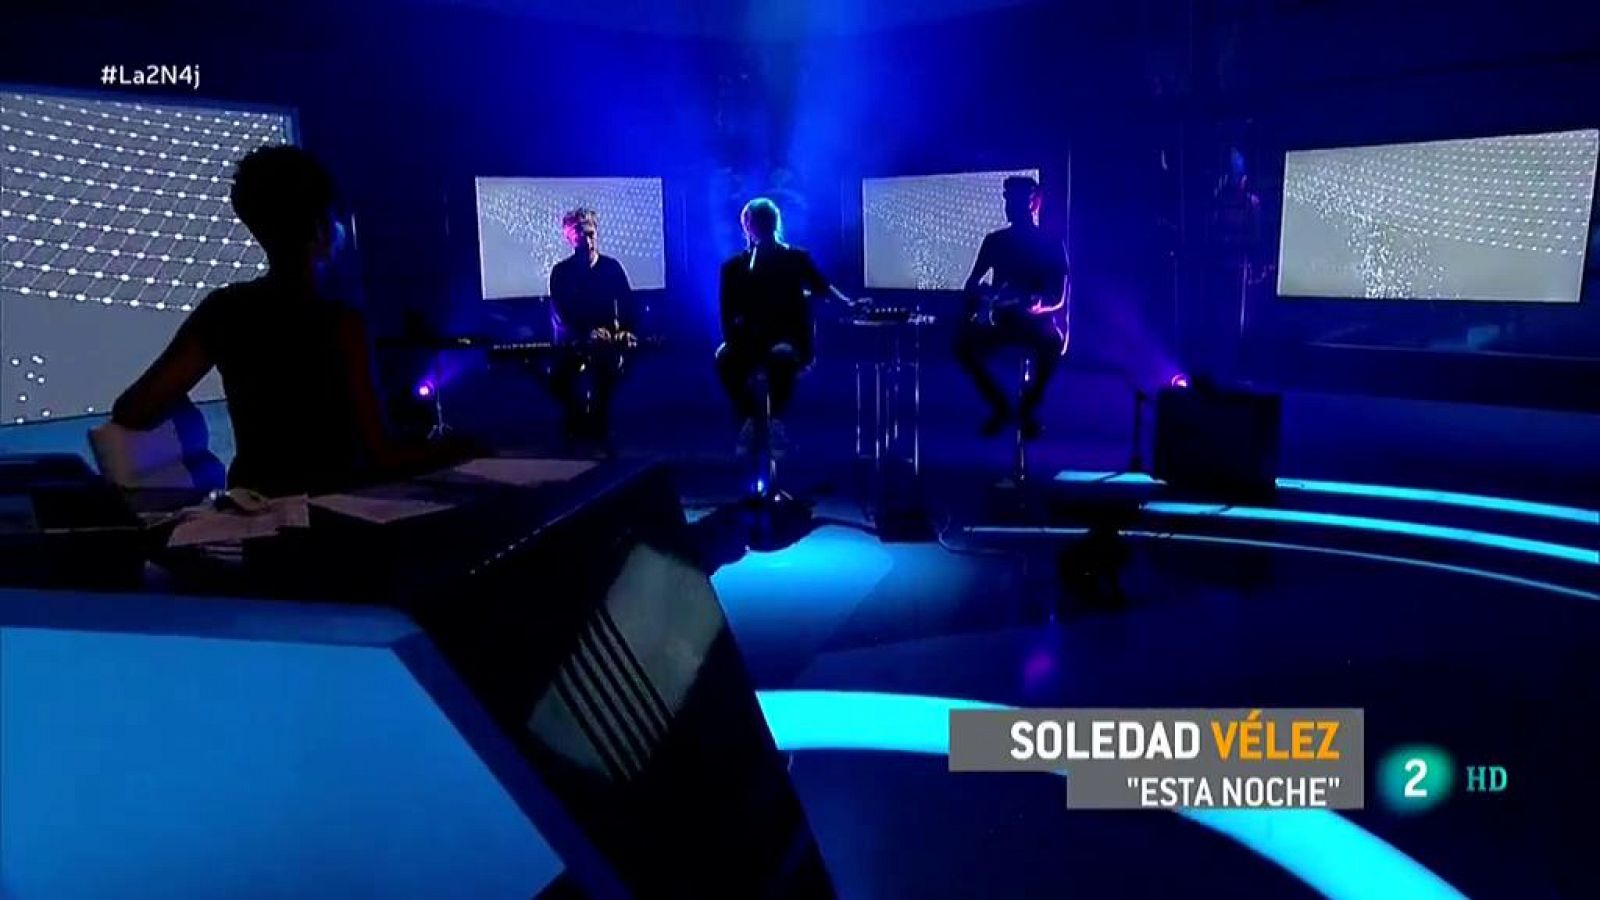 La 2 Noticias: Soledad Vélez interpreta "Esta Noche" | RTVE Play